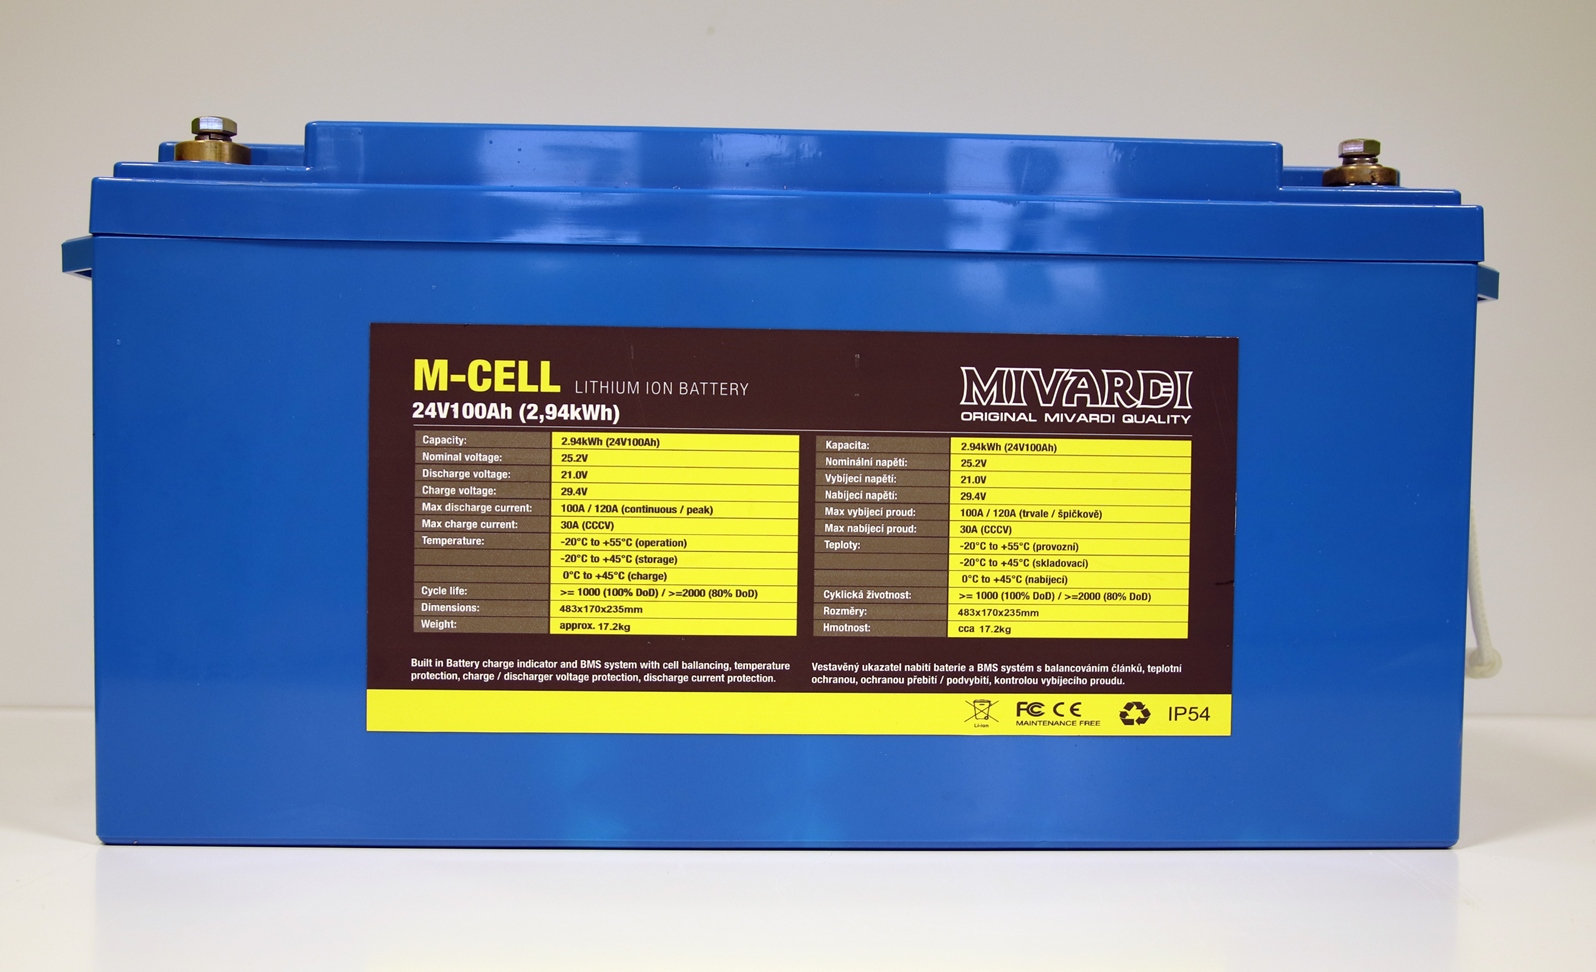 Lithiová baterie M-CELL 24V 100Ah